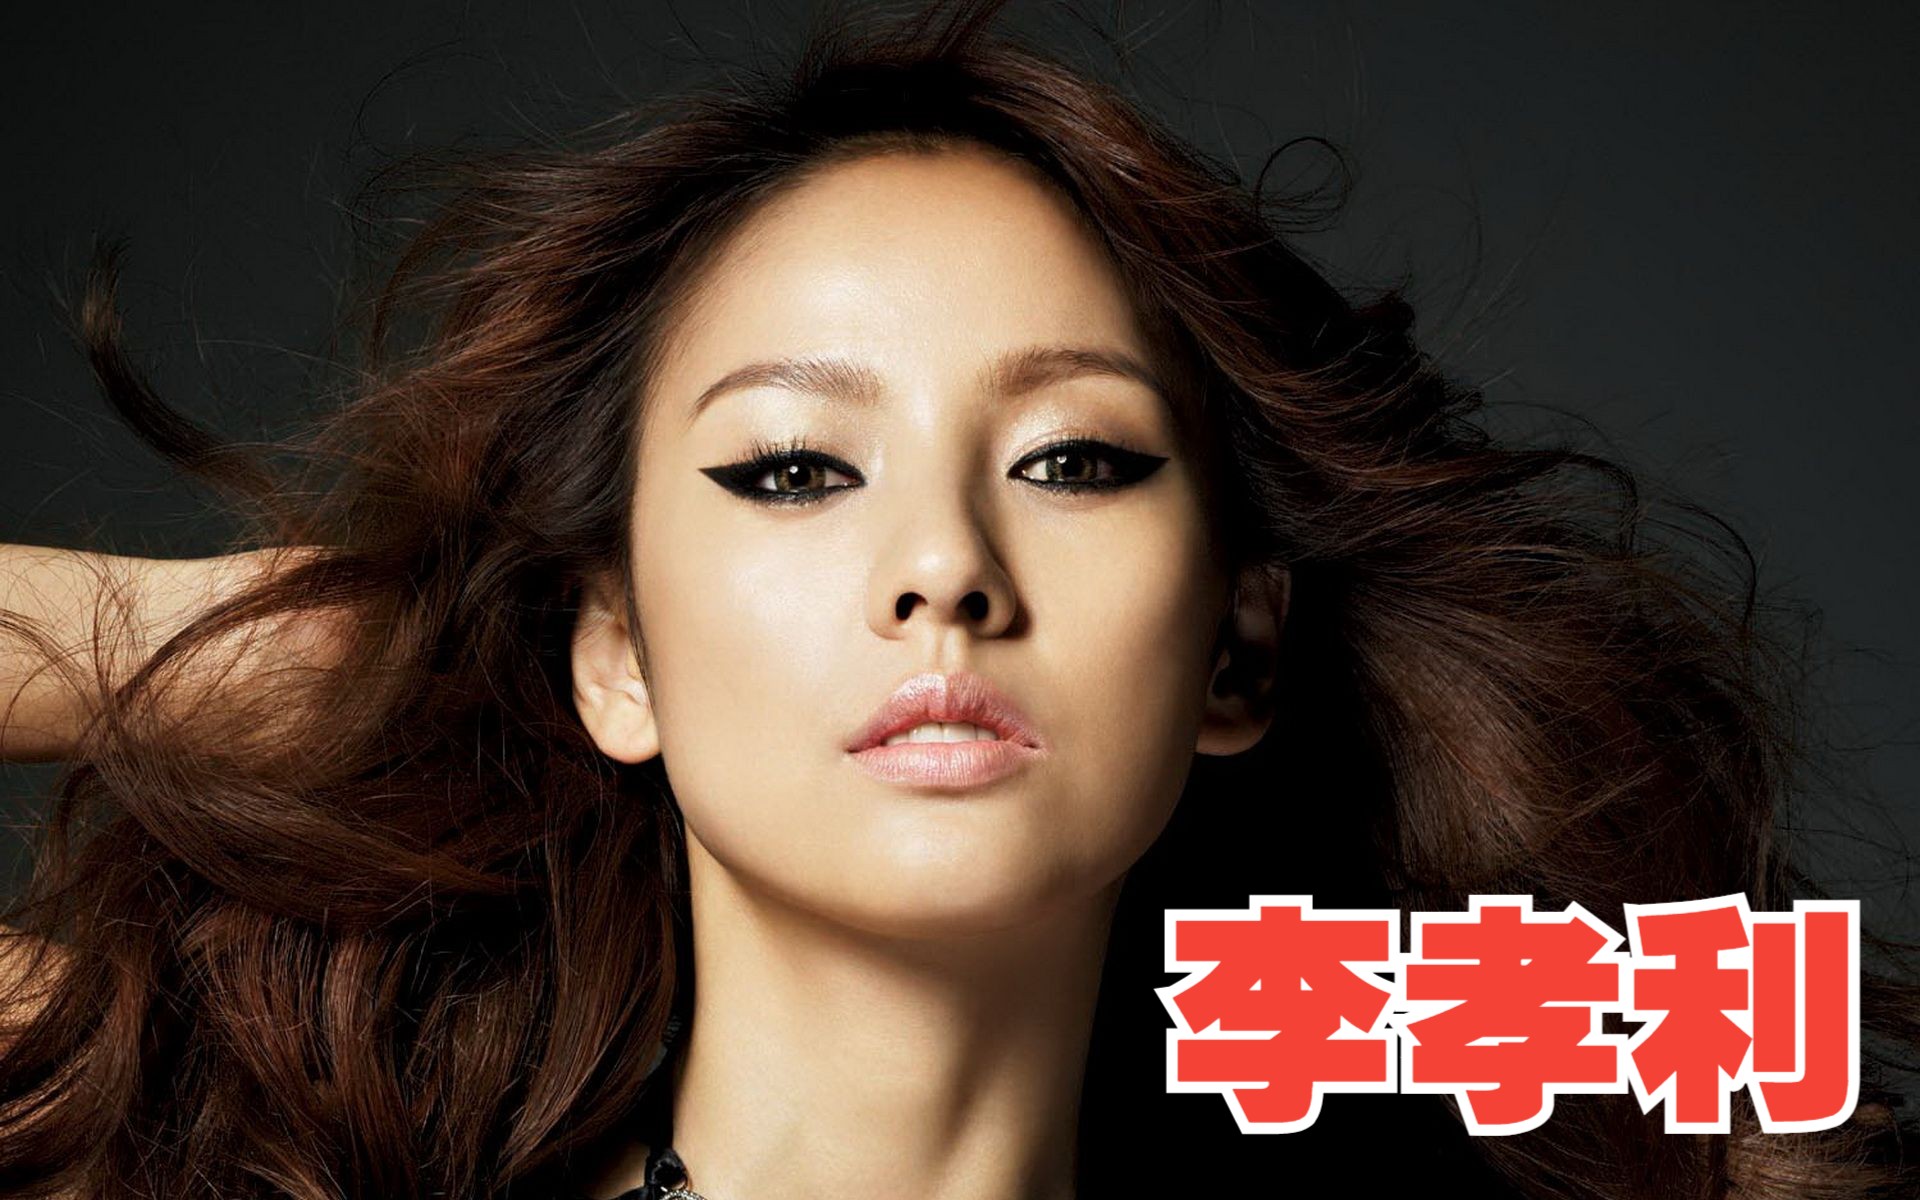 李孝利 韩国女歌手,演员,模特,舞者 性感符号的代表性人物 拥有国民